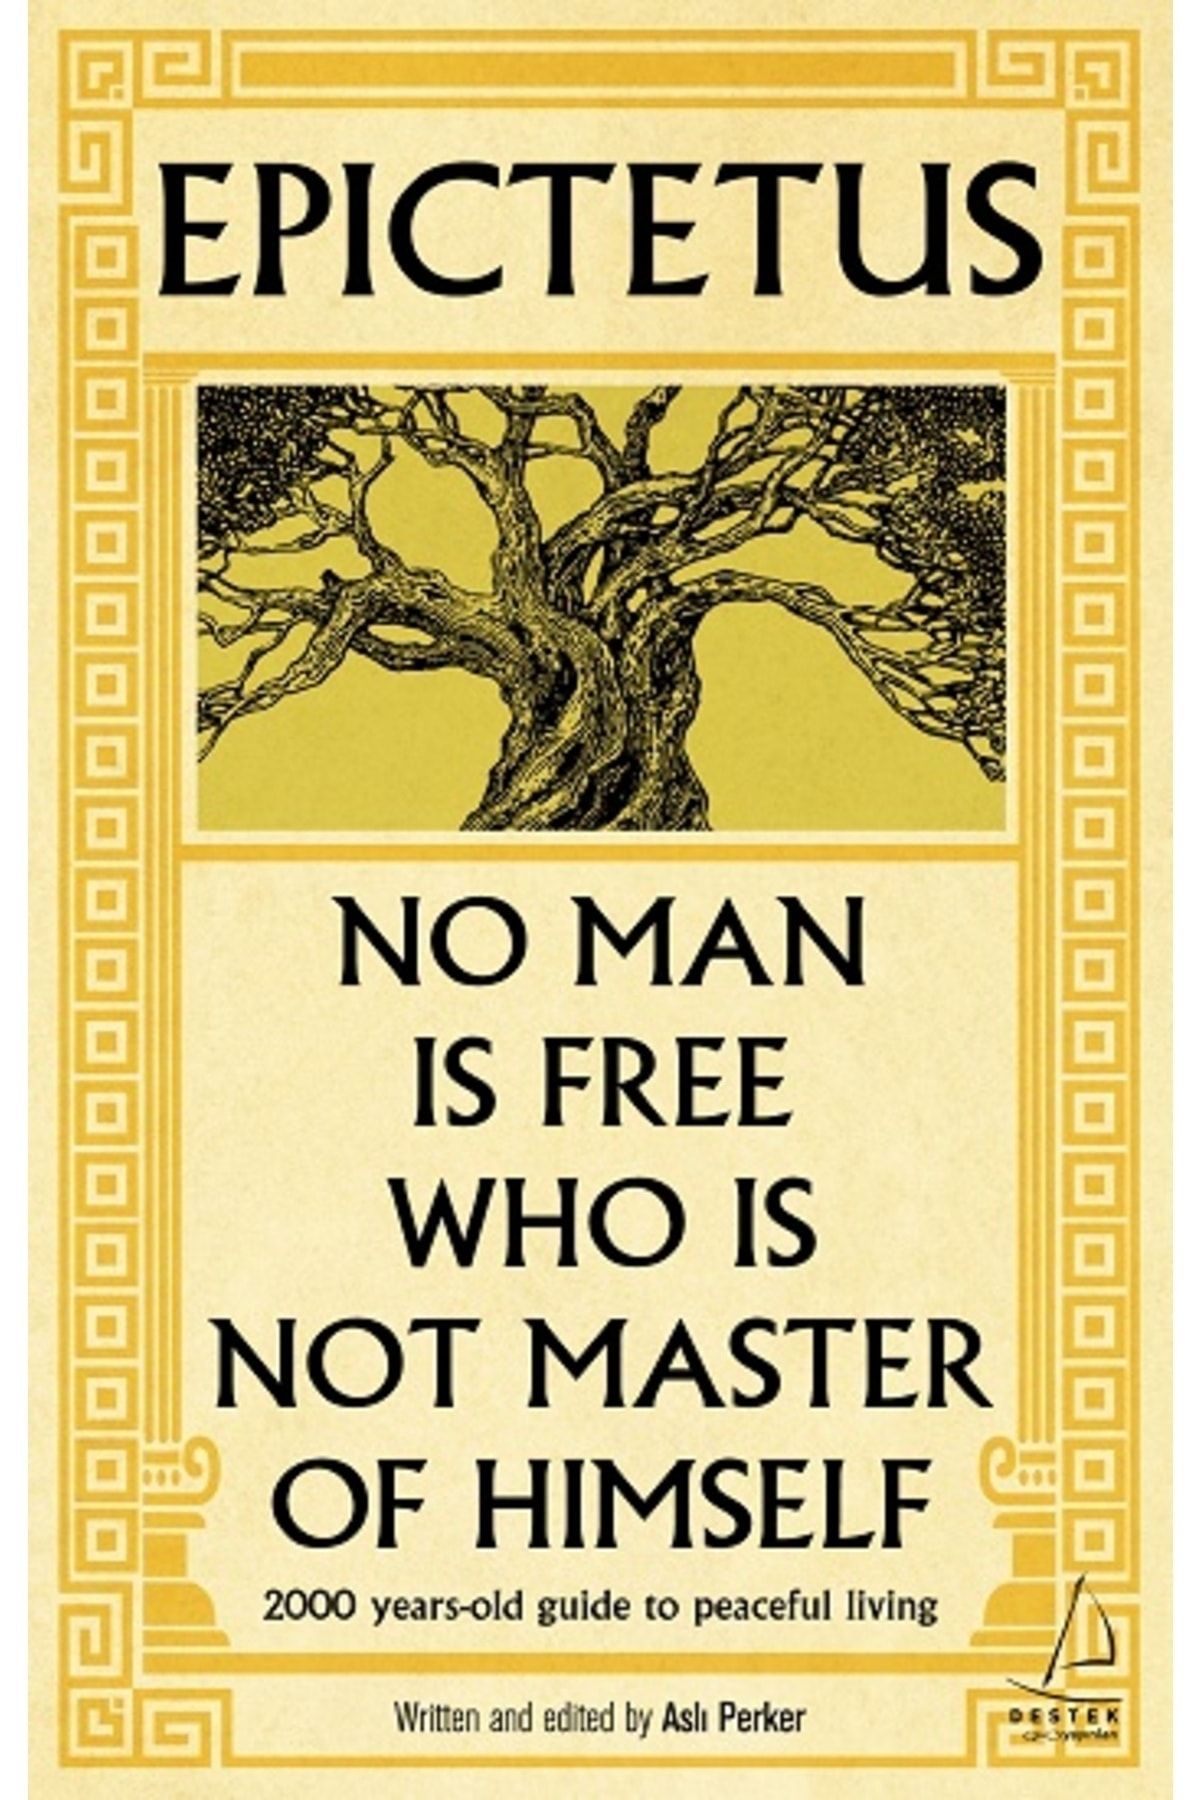 Destek Yayınları Epictetus - No Man is Free Who is Not Master of Himself kitabı - Aslı Perker - Destek Yayınları